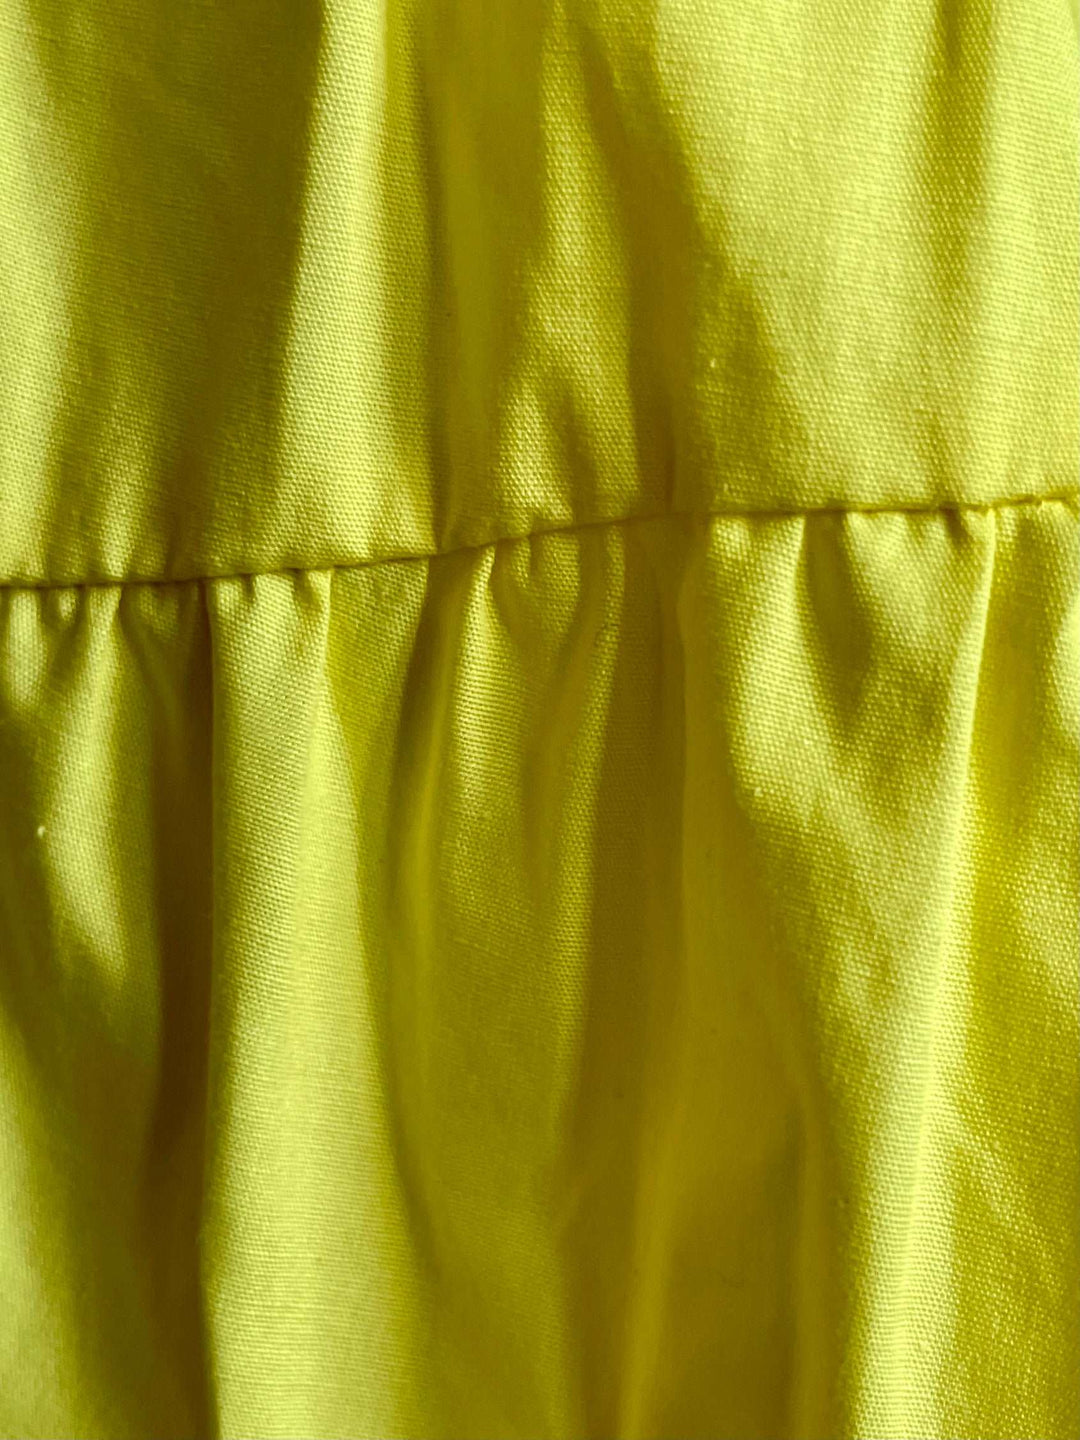 Beulah Style Yellow Ruffle Dress